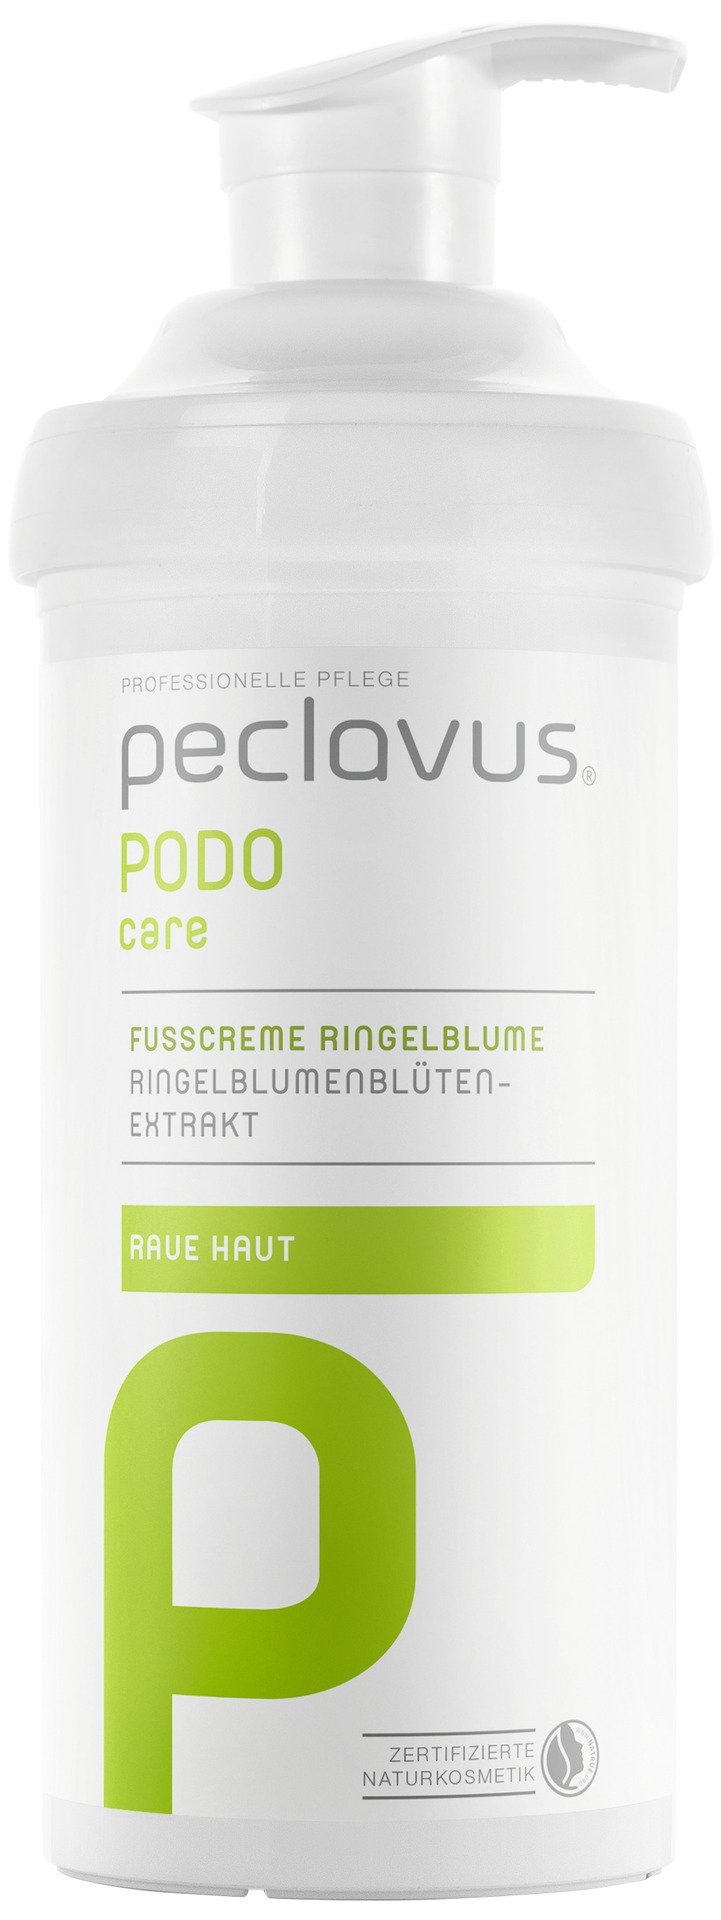 Peclavus PODOcare Fußcreme Ringelblume | 500 ml